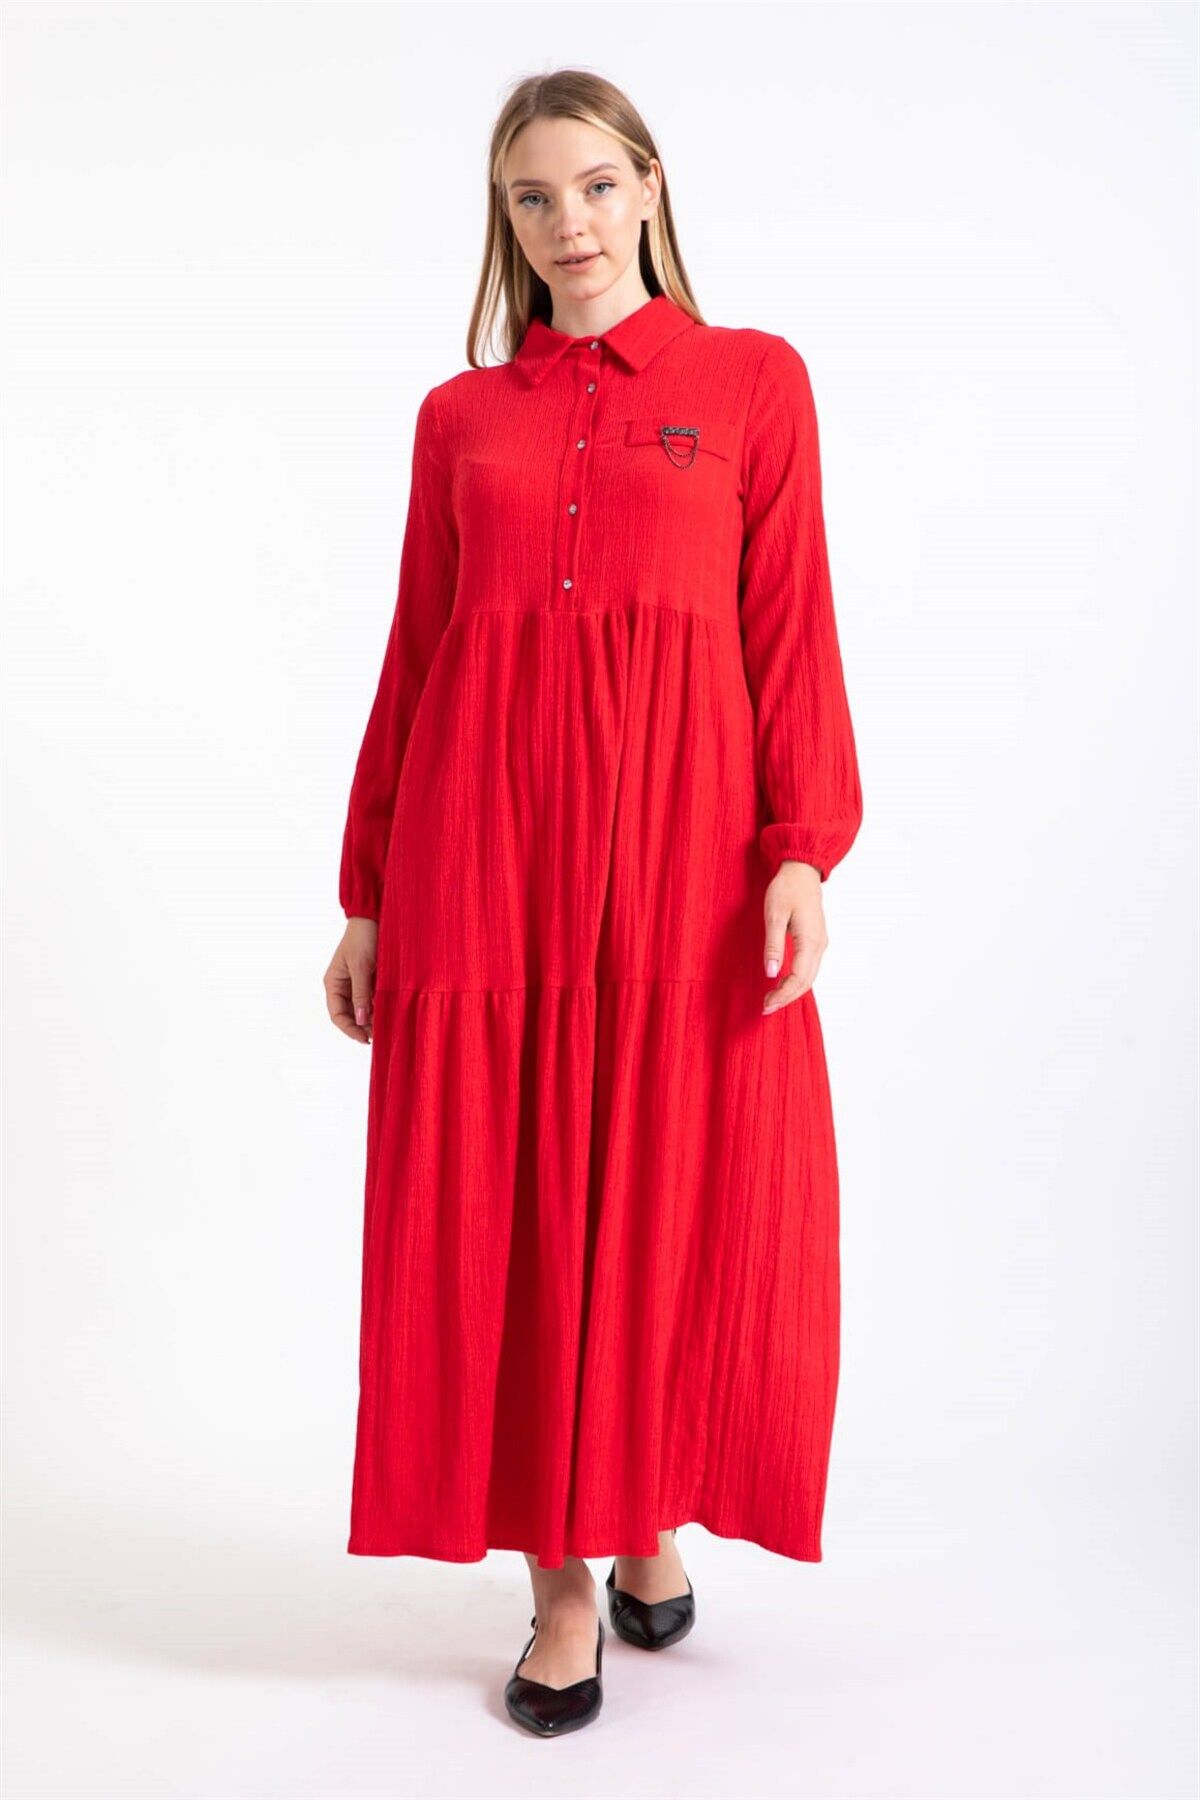 Esswaap Broş Detaylı Elbise Kırmızı